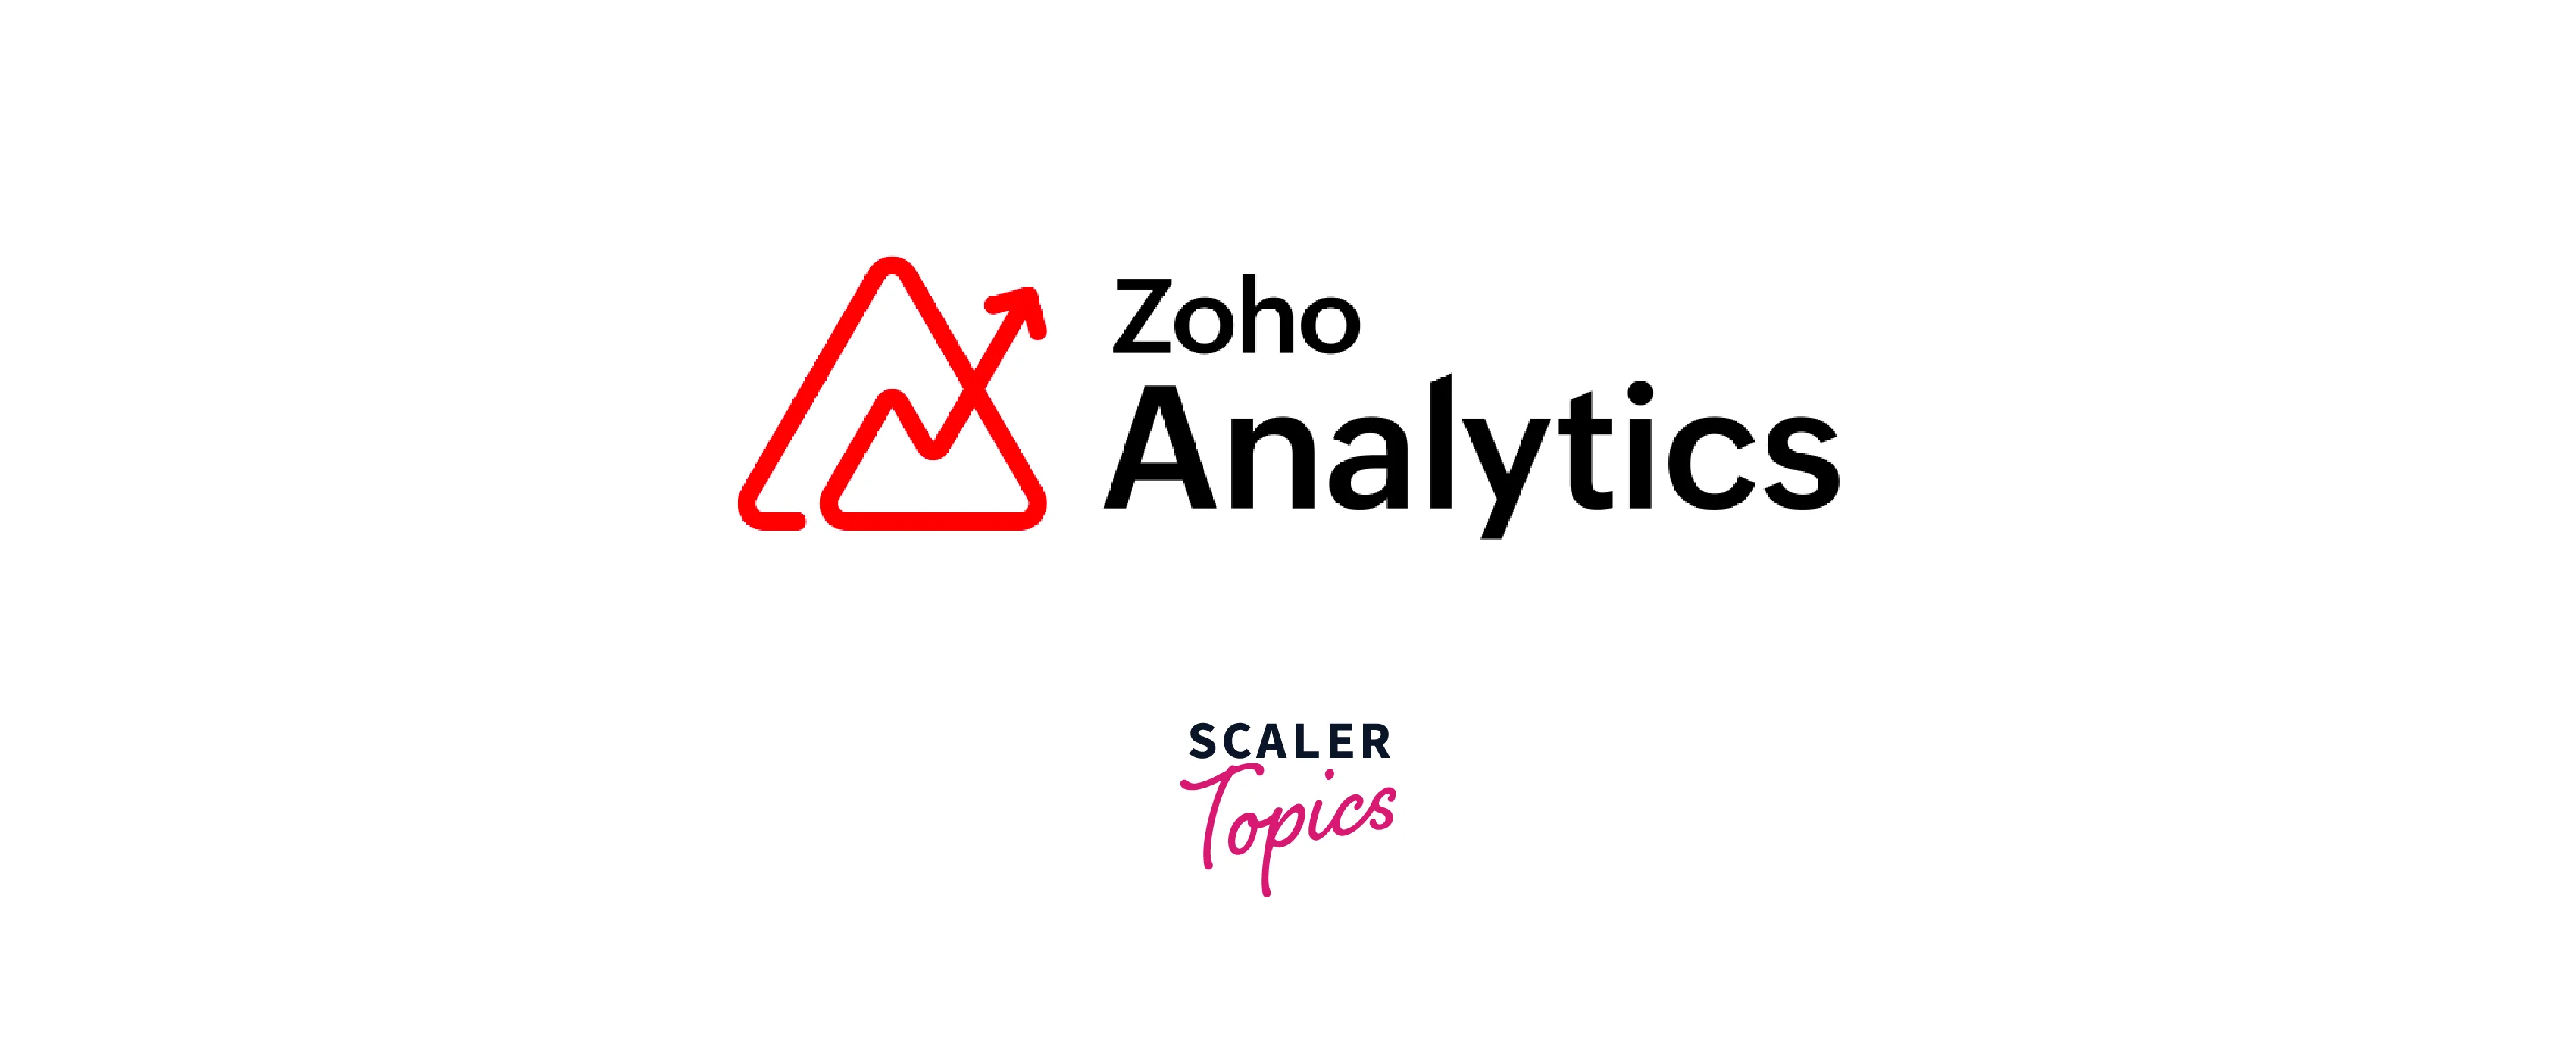 big data analytics tool zoho analytics